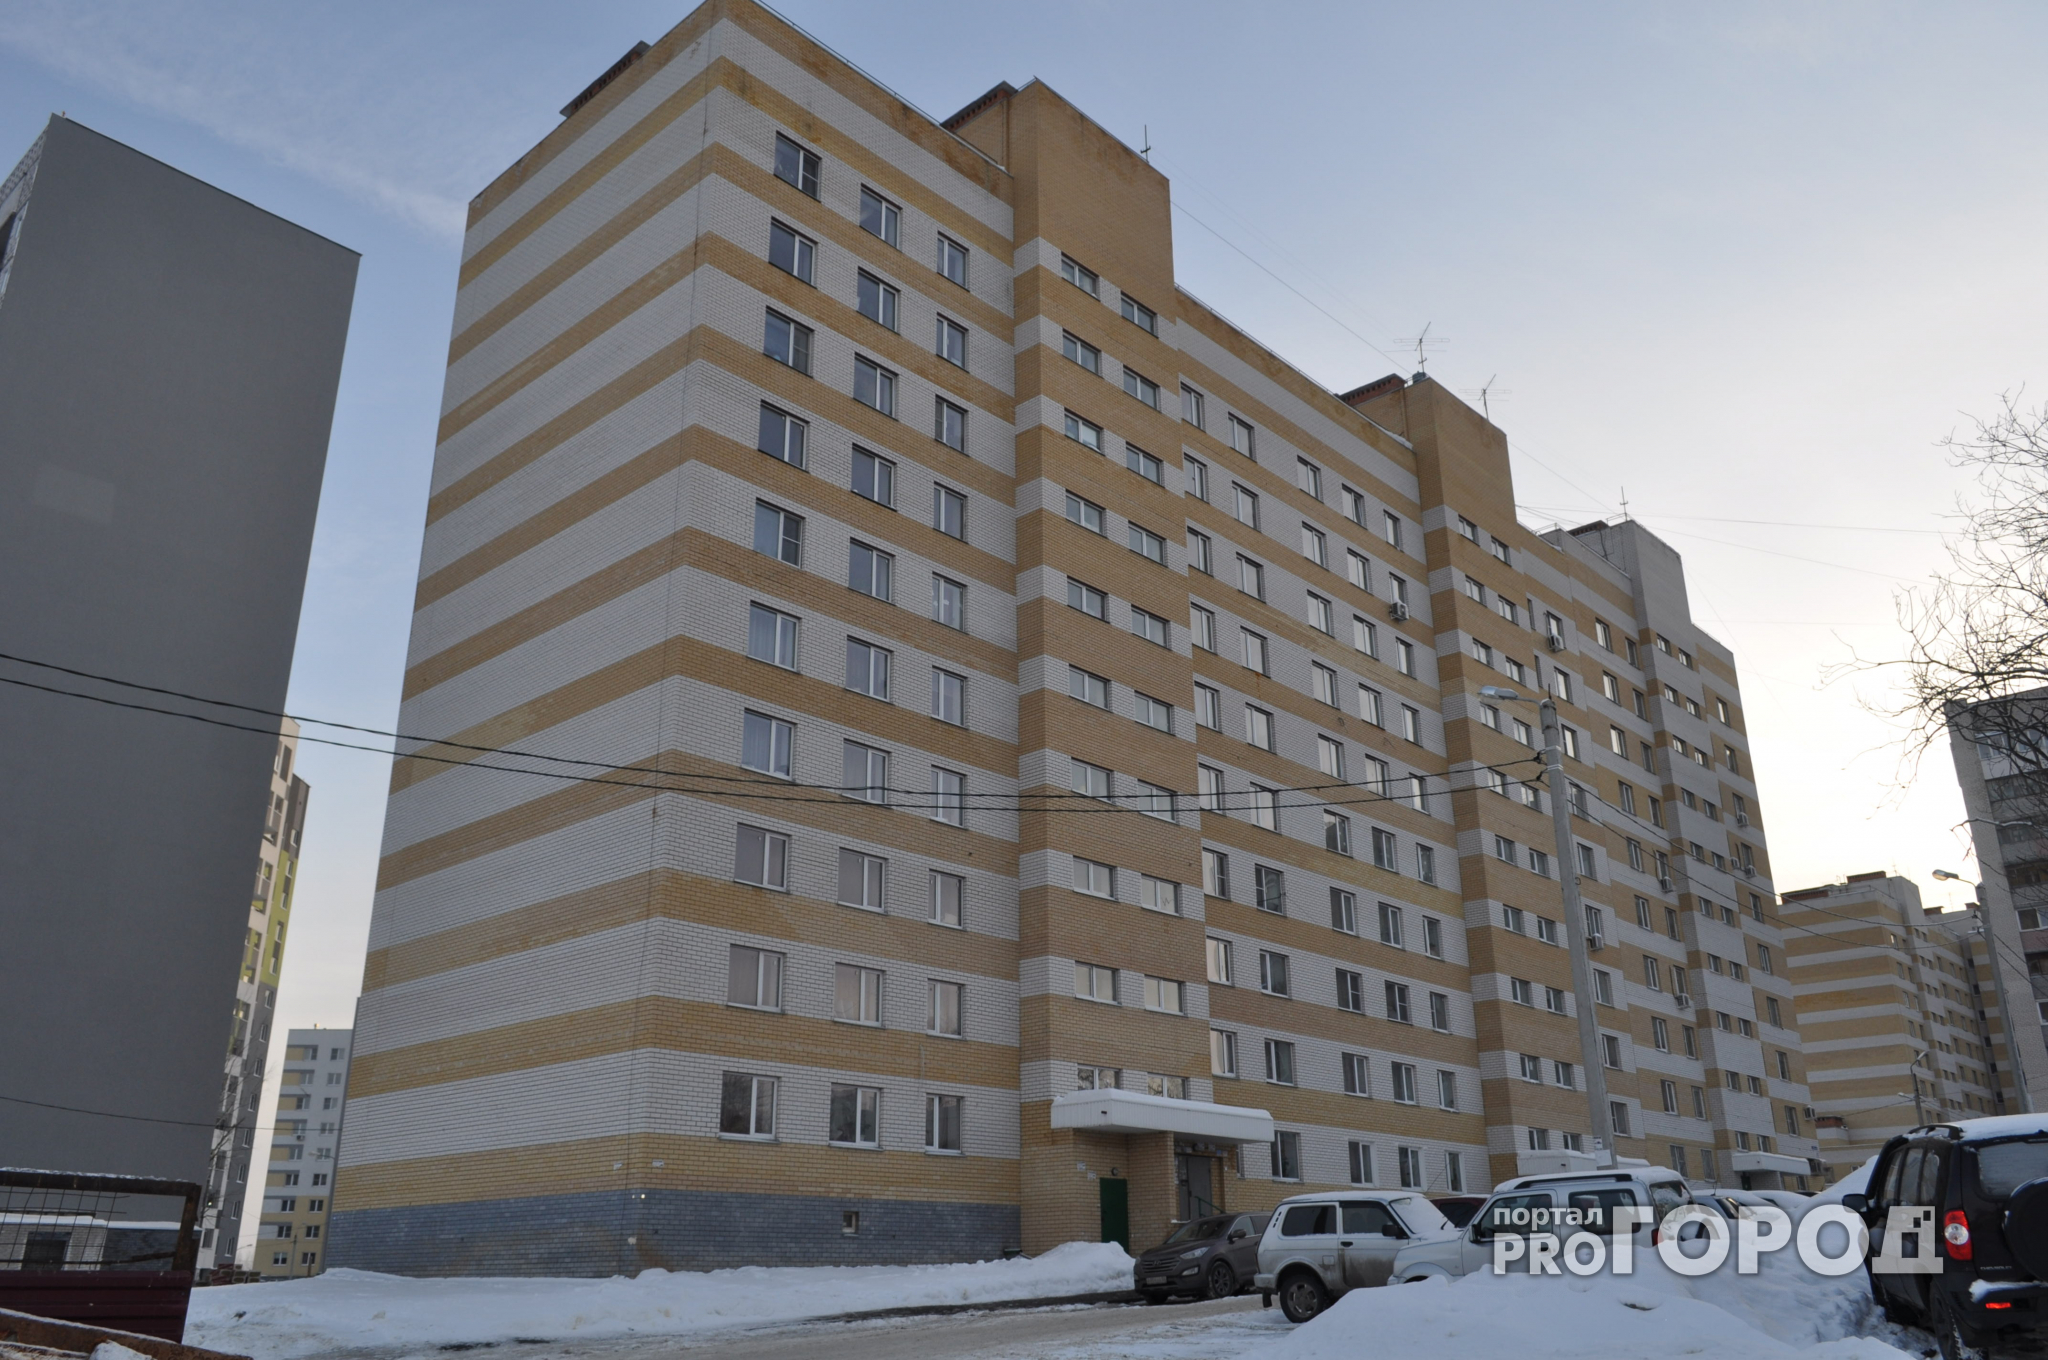 "Он трещал еще при строительстве": жители дома на улице Вятской обвиняют застройщика